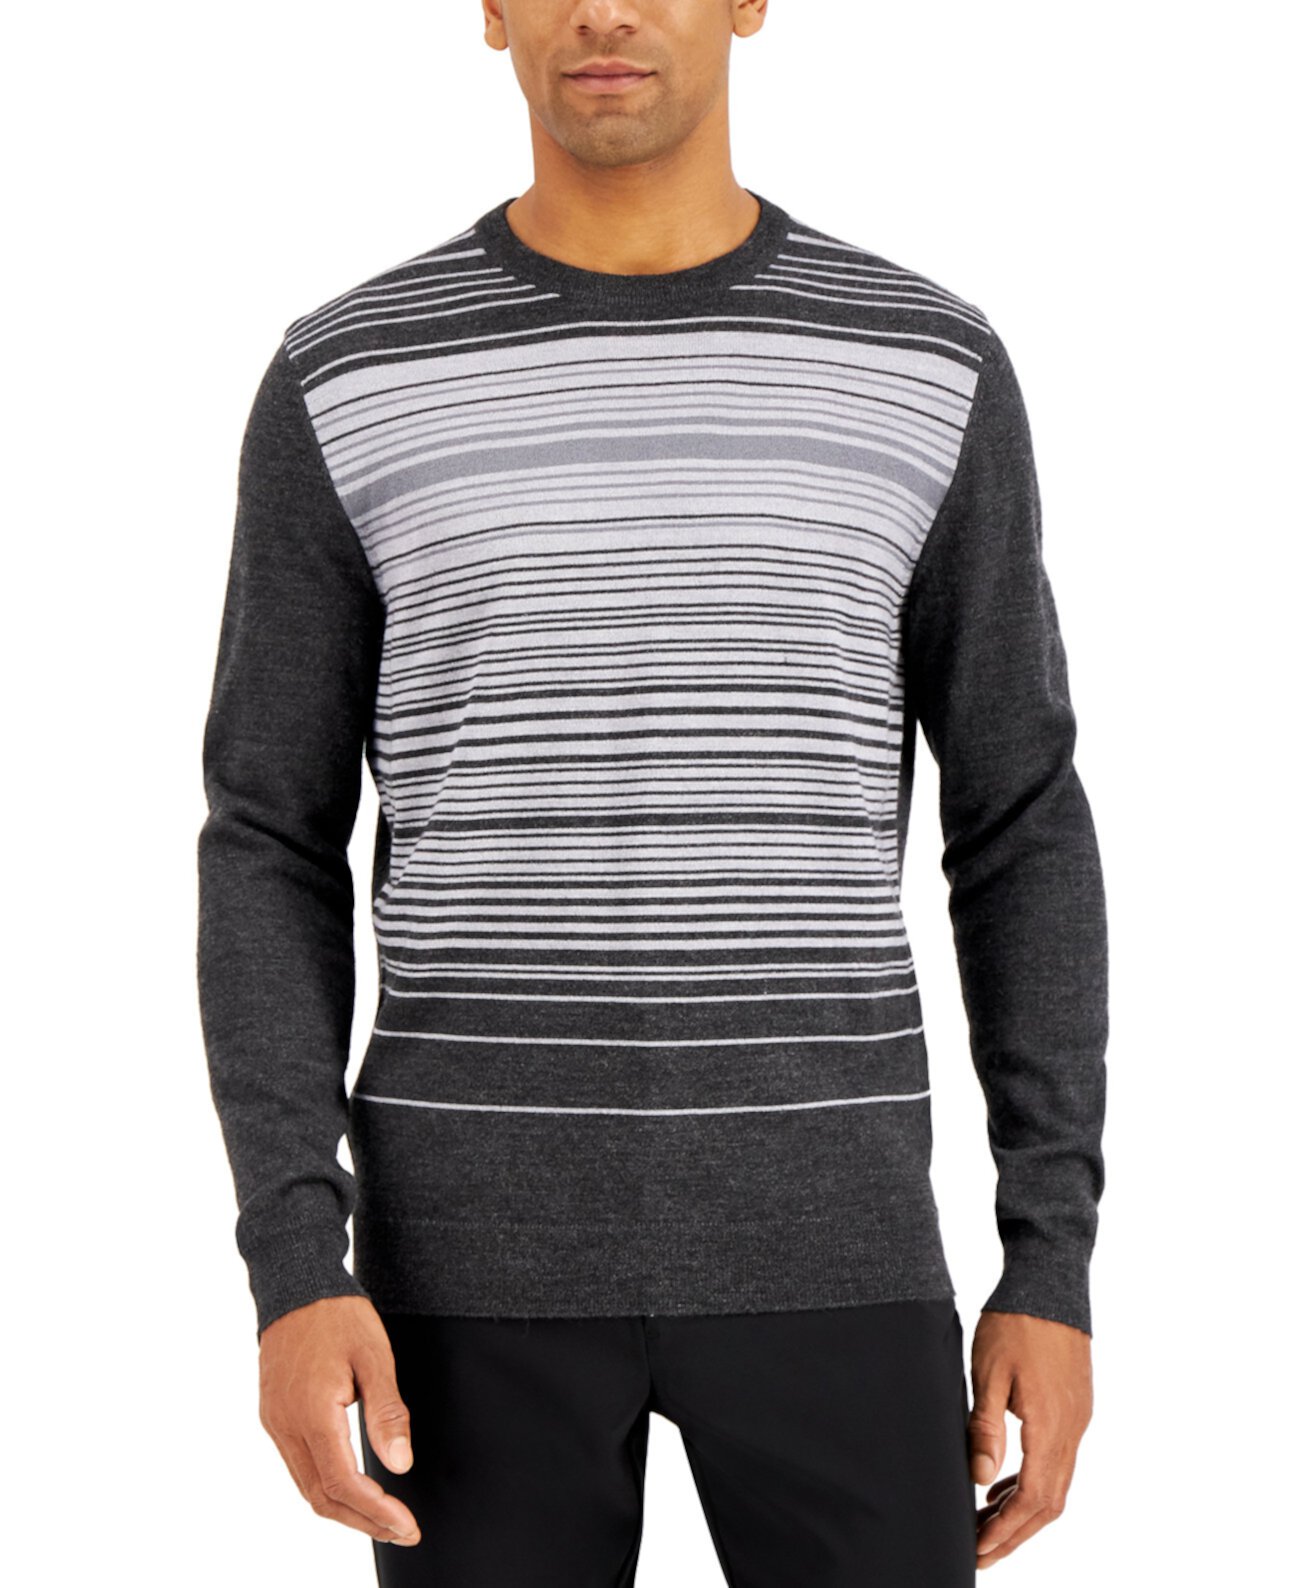 Мужской свитер с круглым вырезом в полоску из смесовой шерсти мериноса, созданный для Macy's Alfani